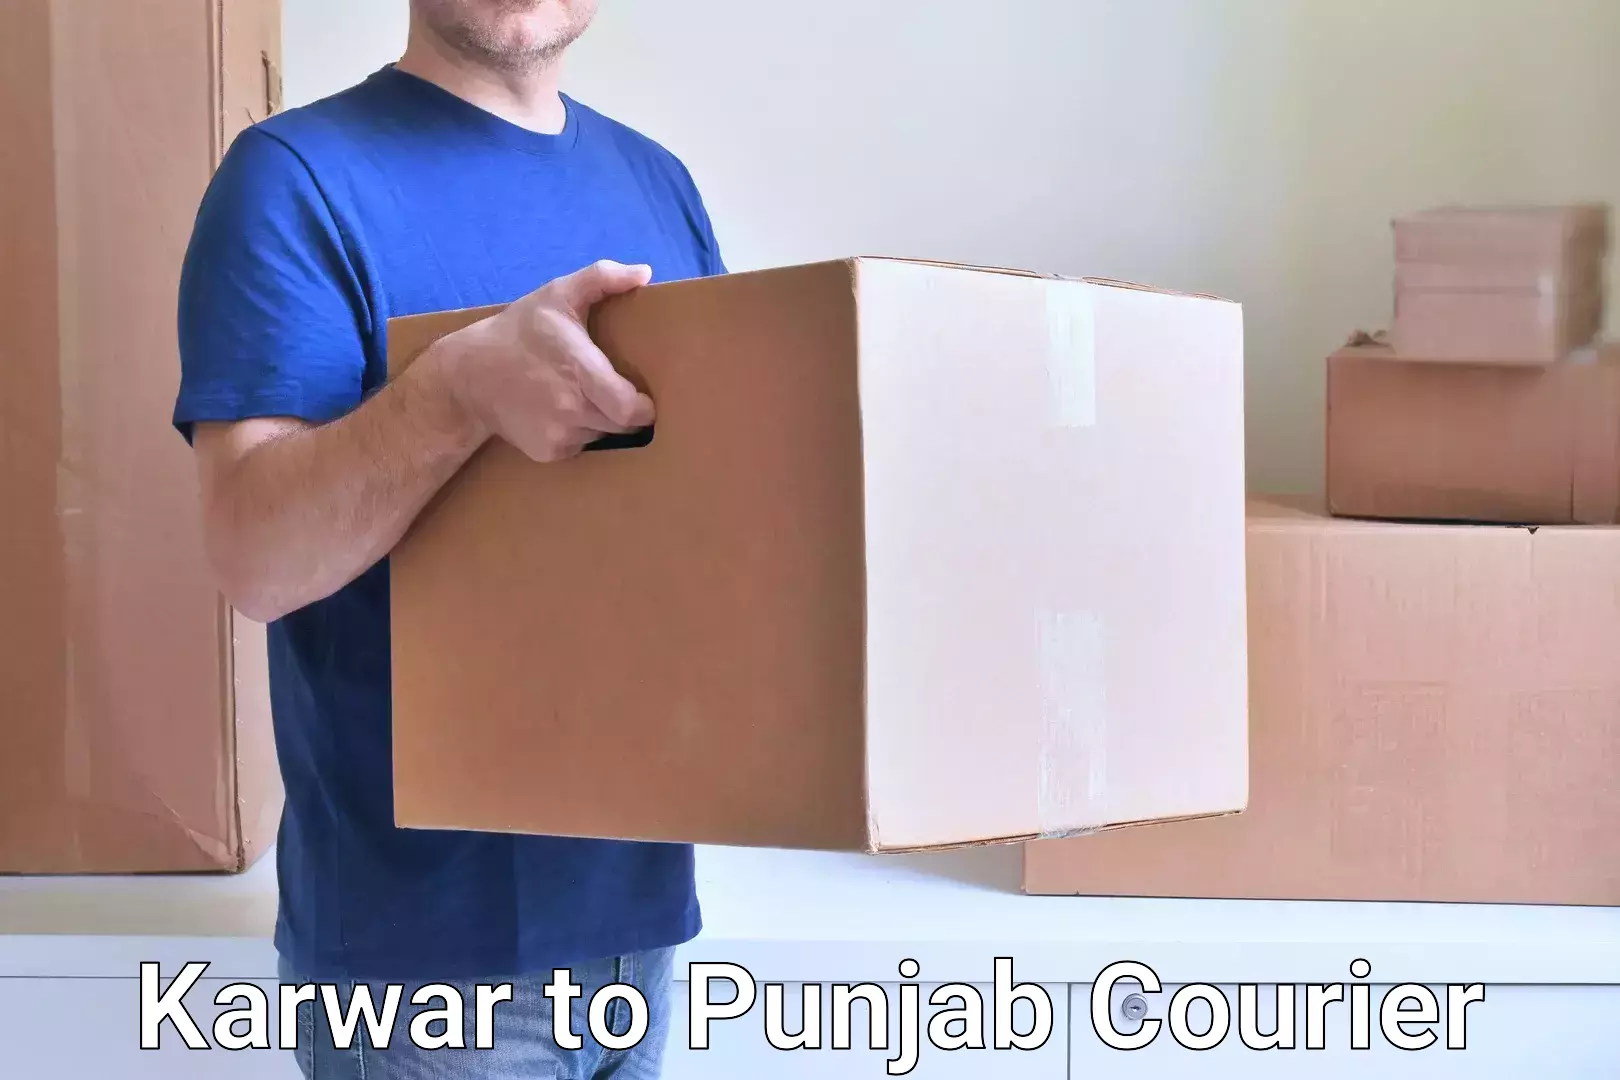 Quality courier partnerships Karwar to Punjab